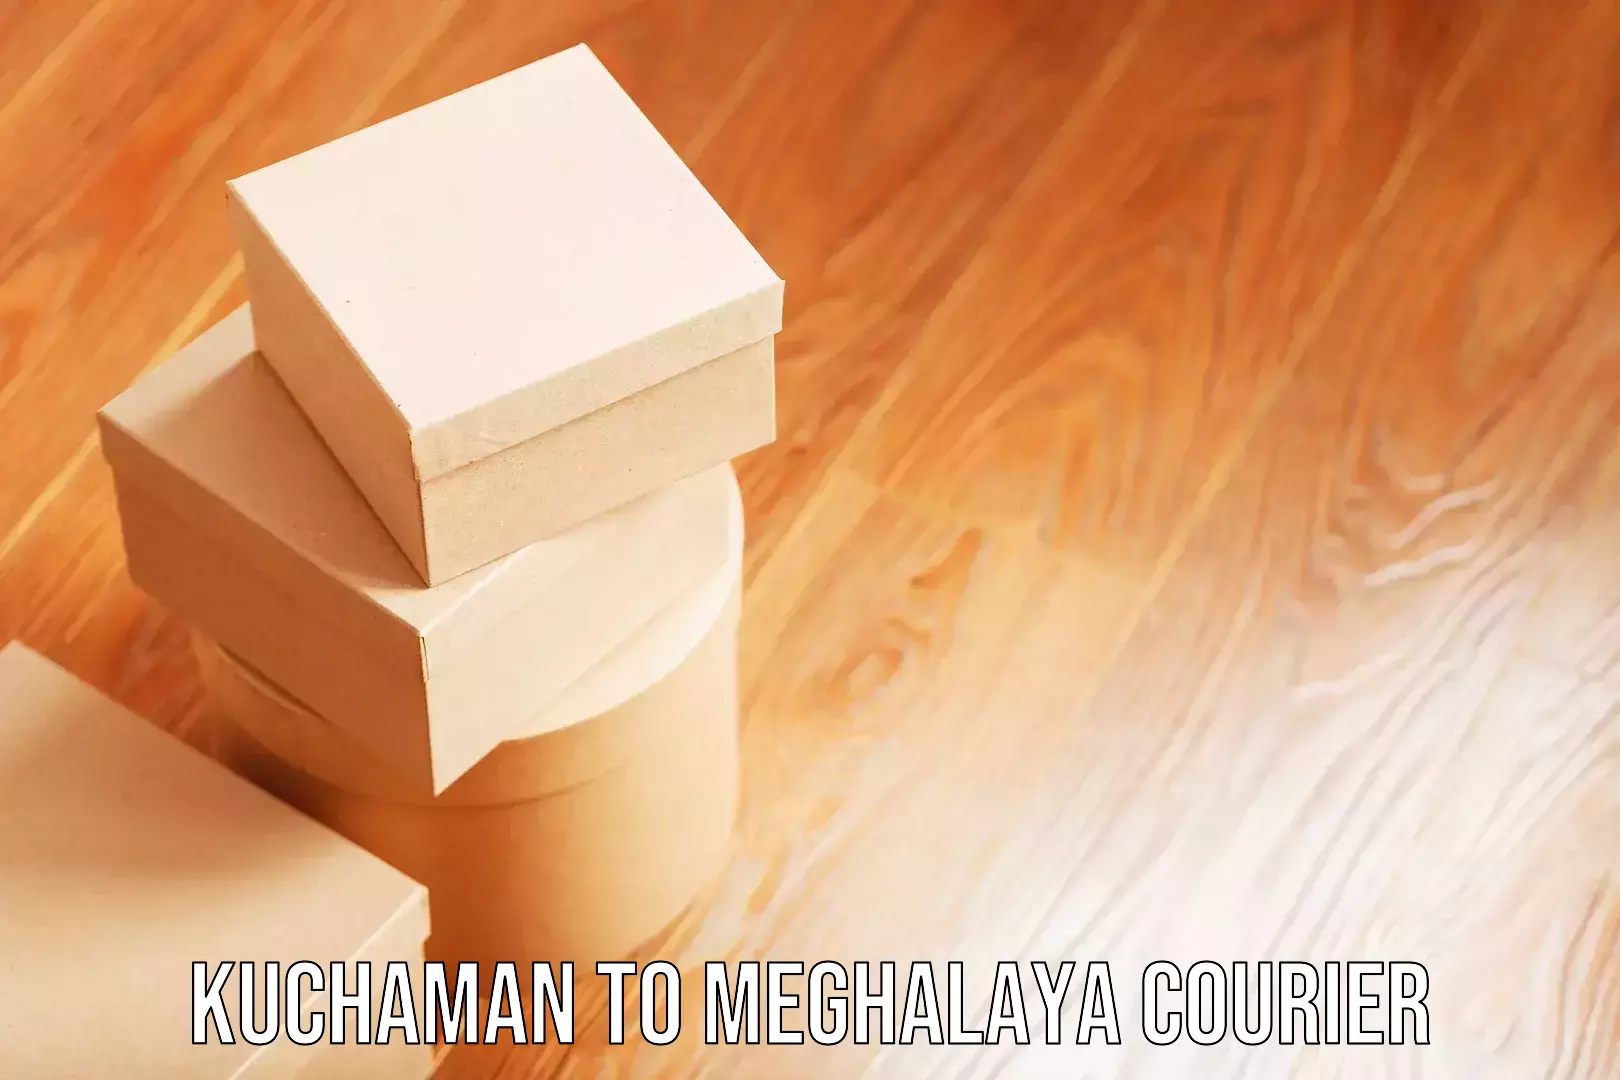 Luggage transport company Kuchaman to Meghalaya